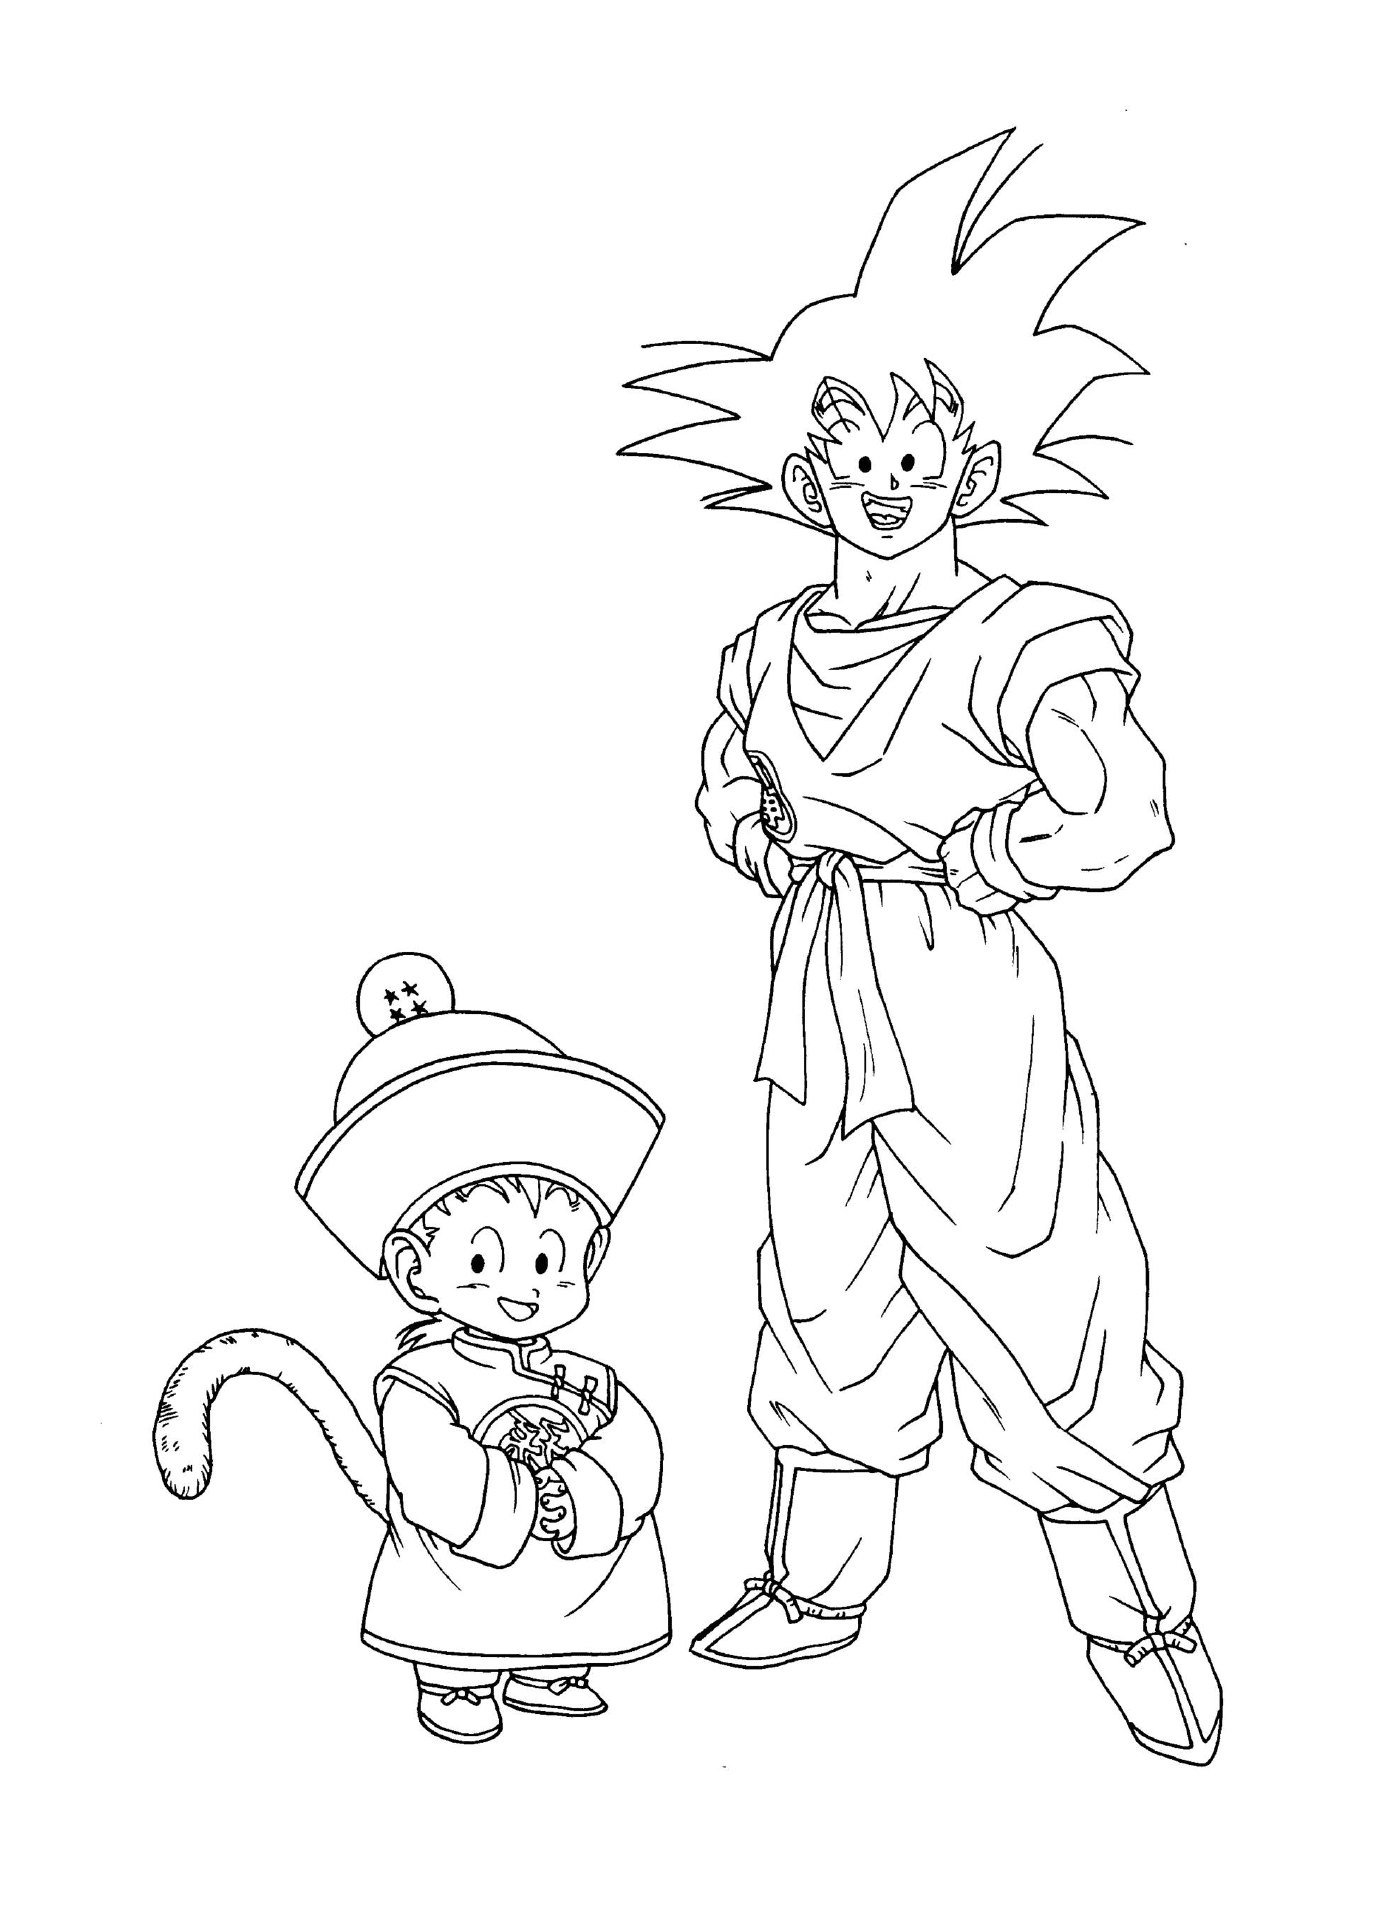  Personaggi di Dragon Ball Z: Goku e Goten 